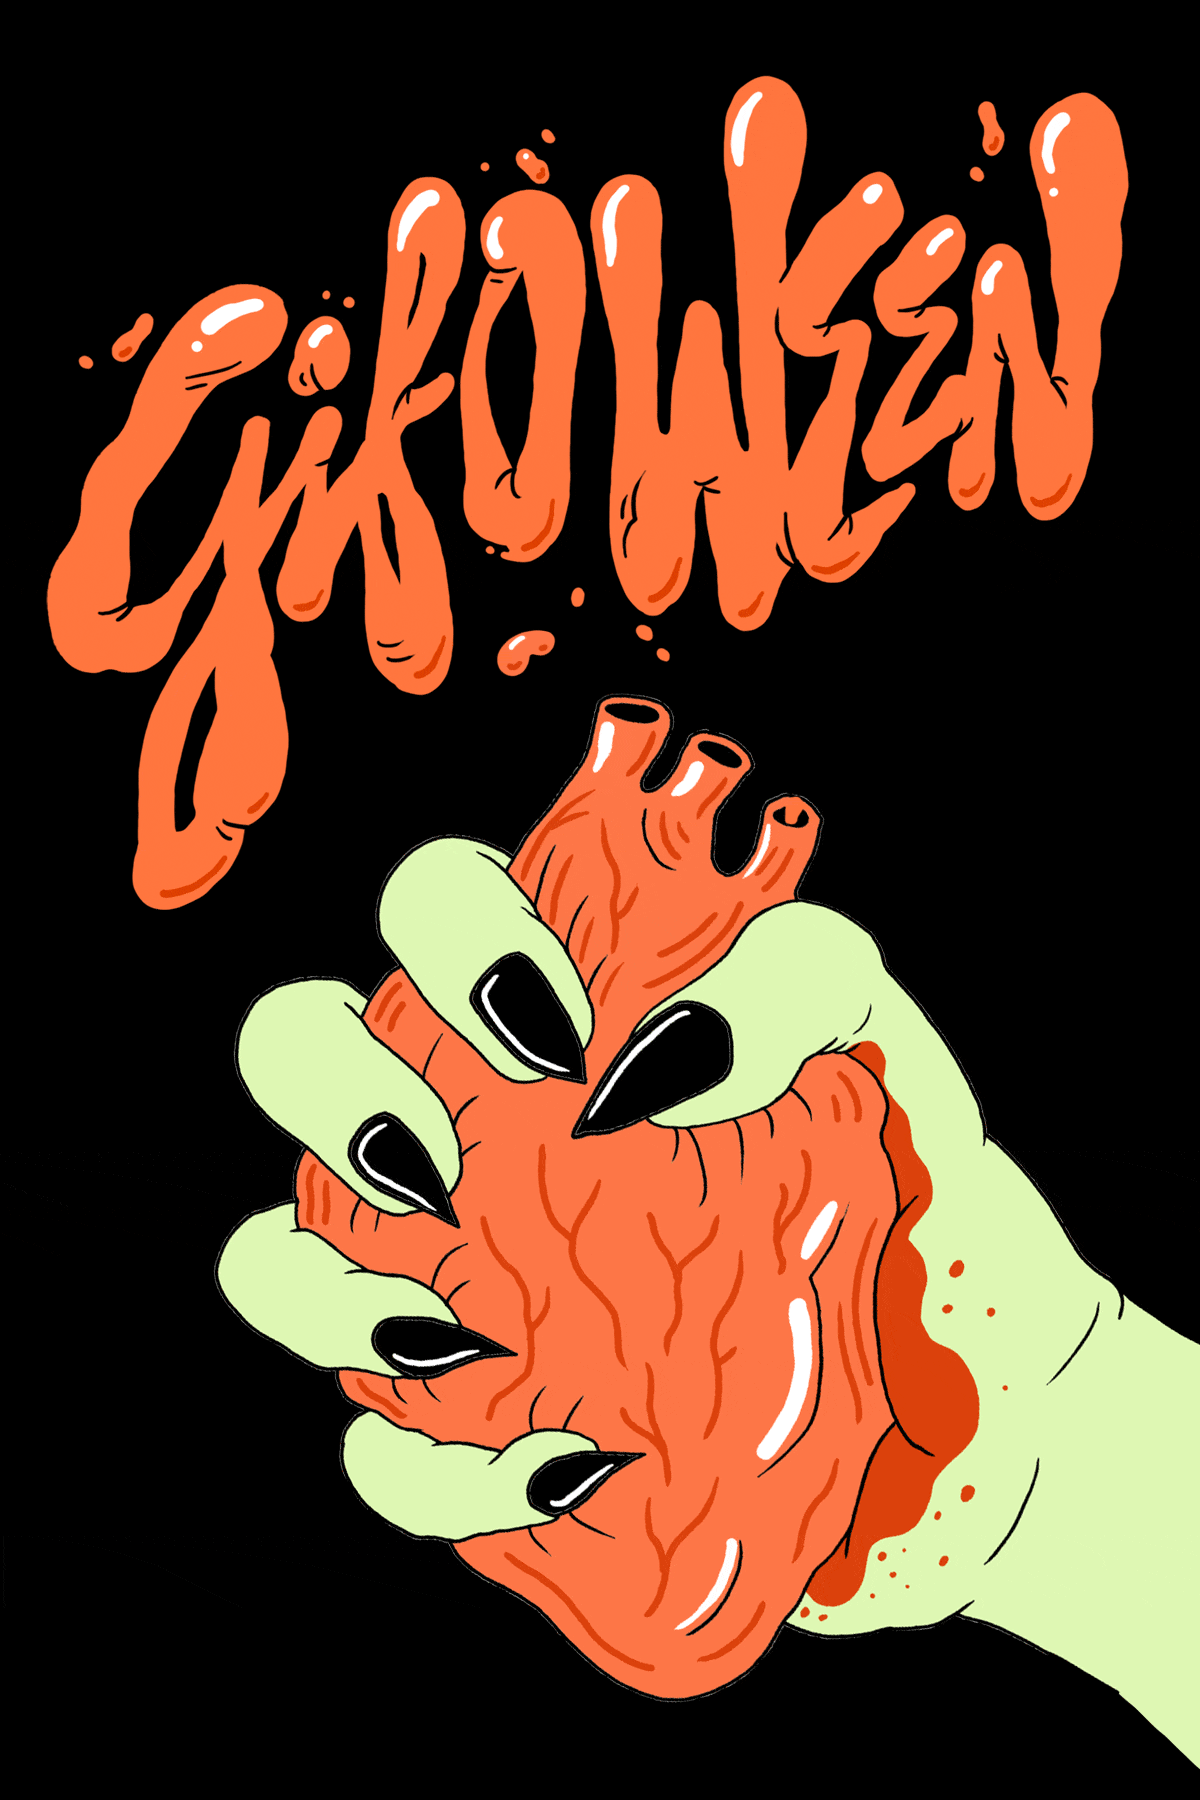 halloween-animated-gifs-gameznet-00449.gif